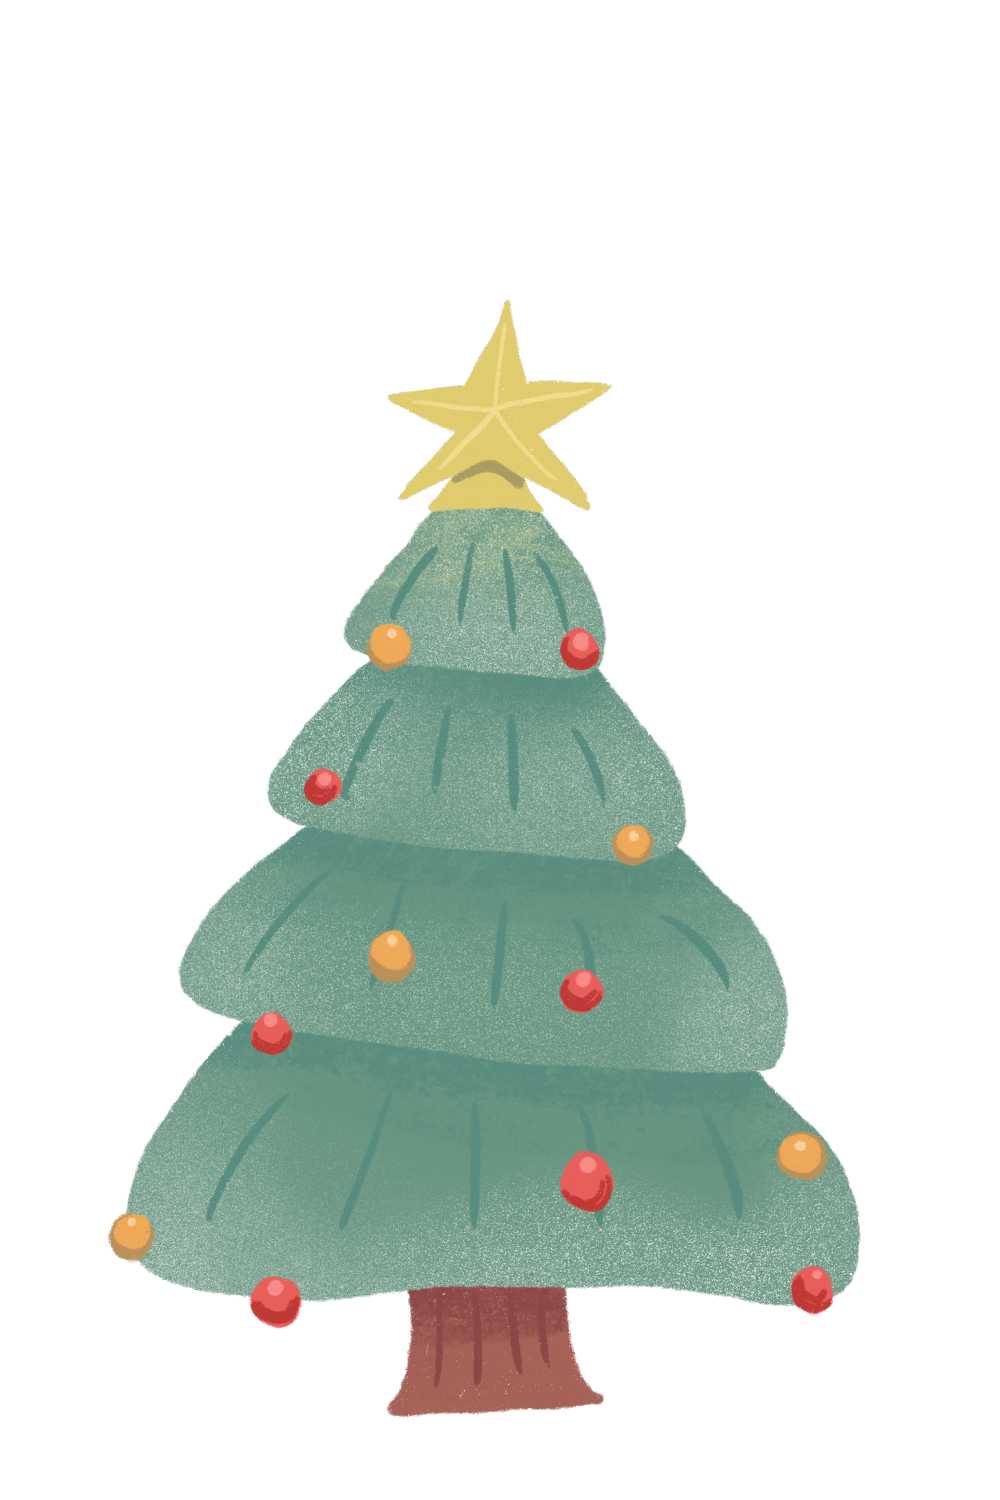 树圣诞树圣诞节装修圣诞装饰明星雪冬天十二月度假